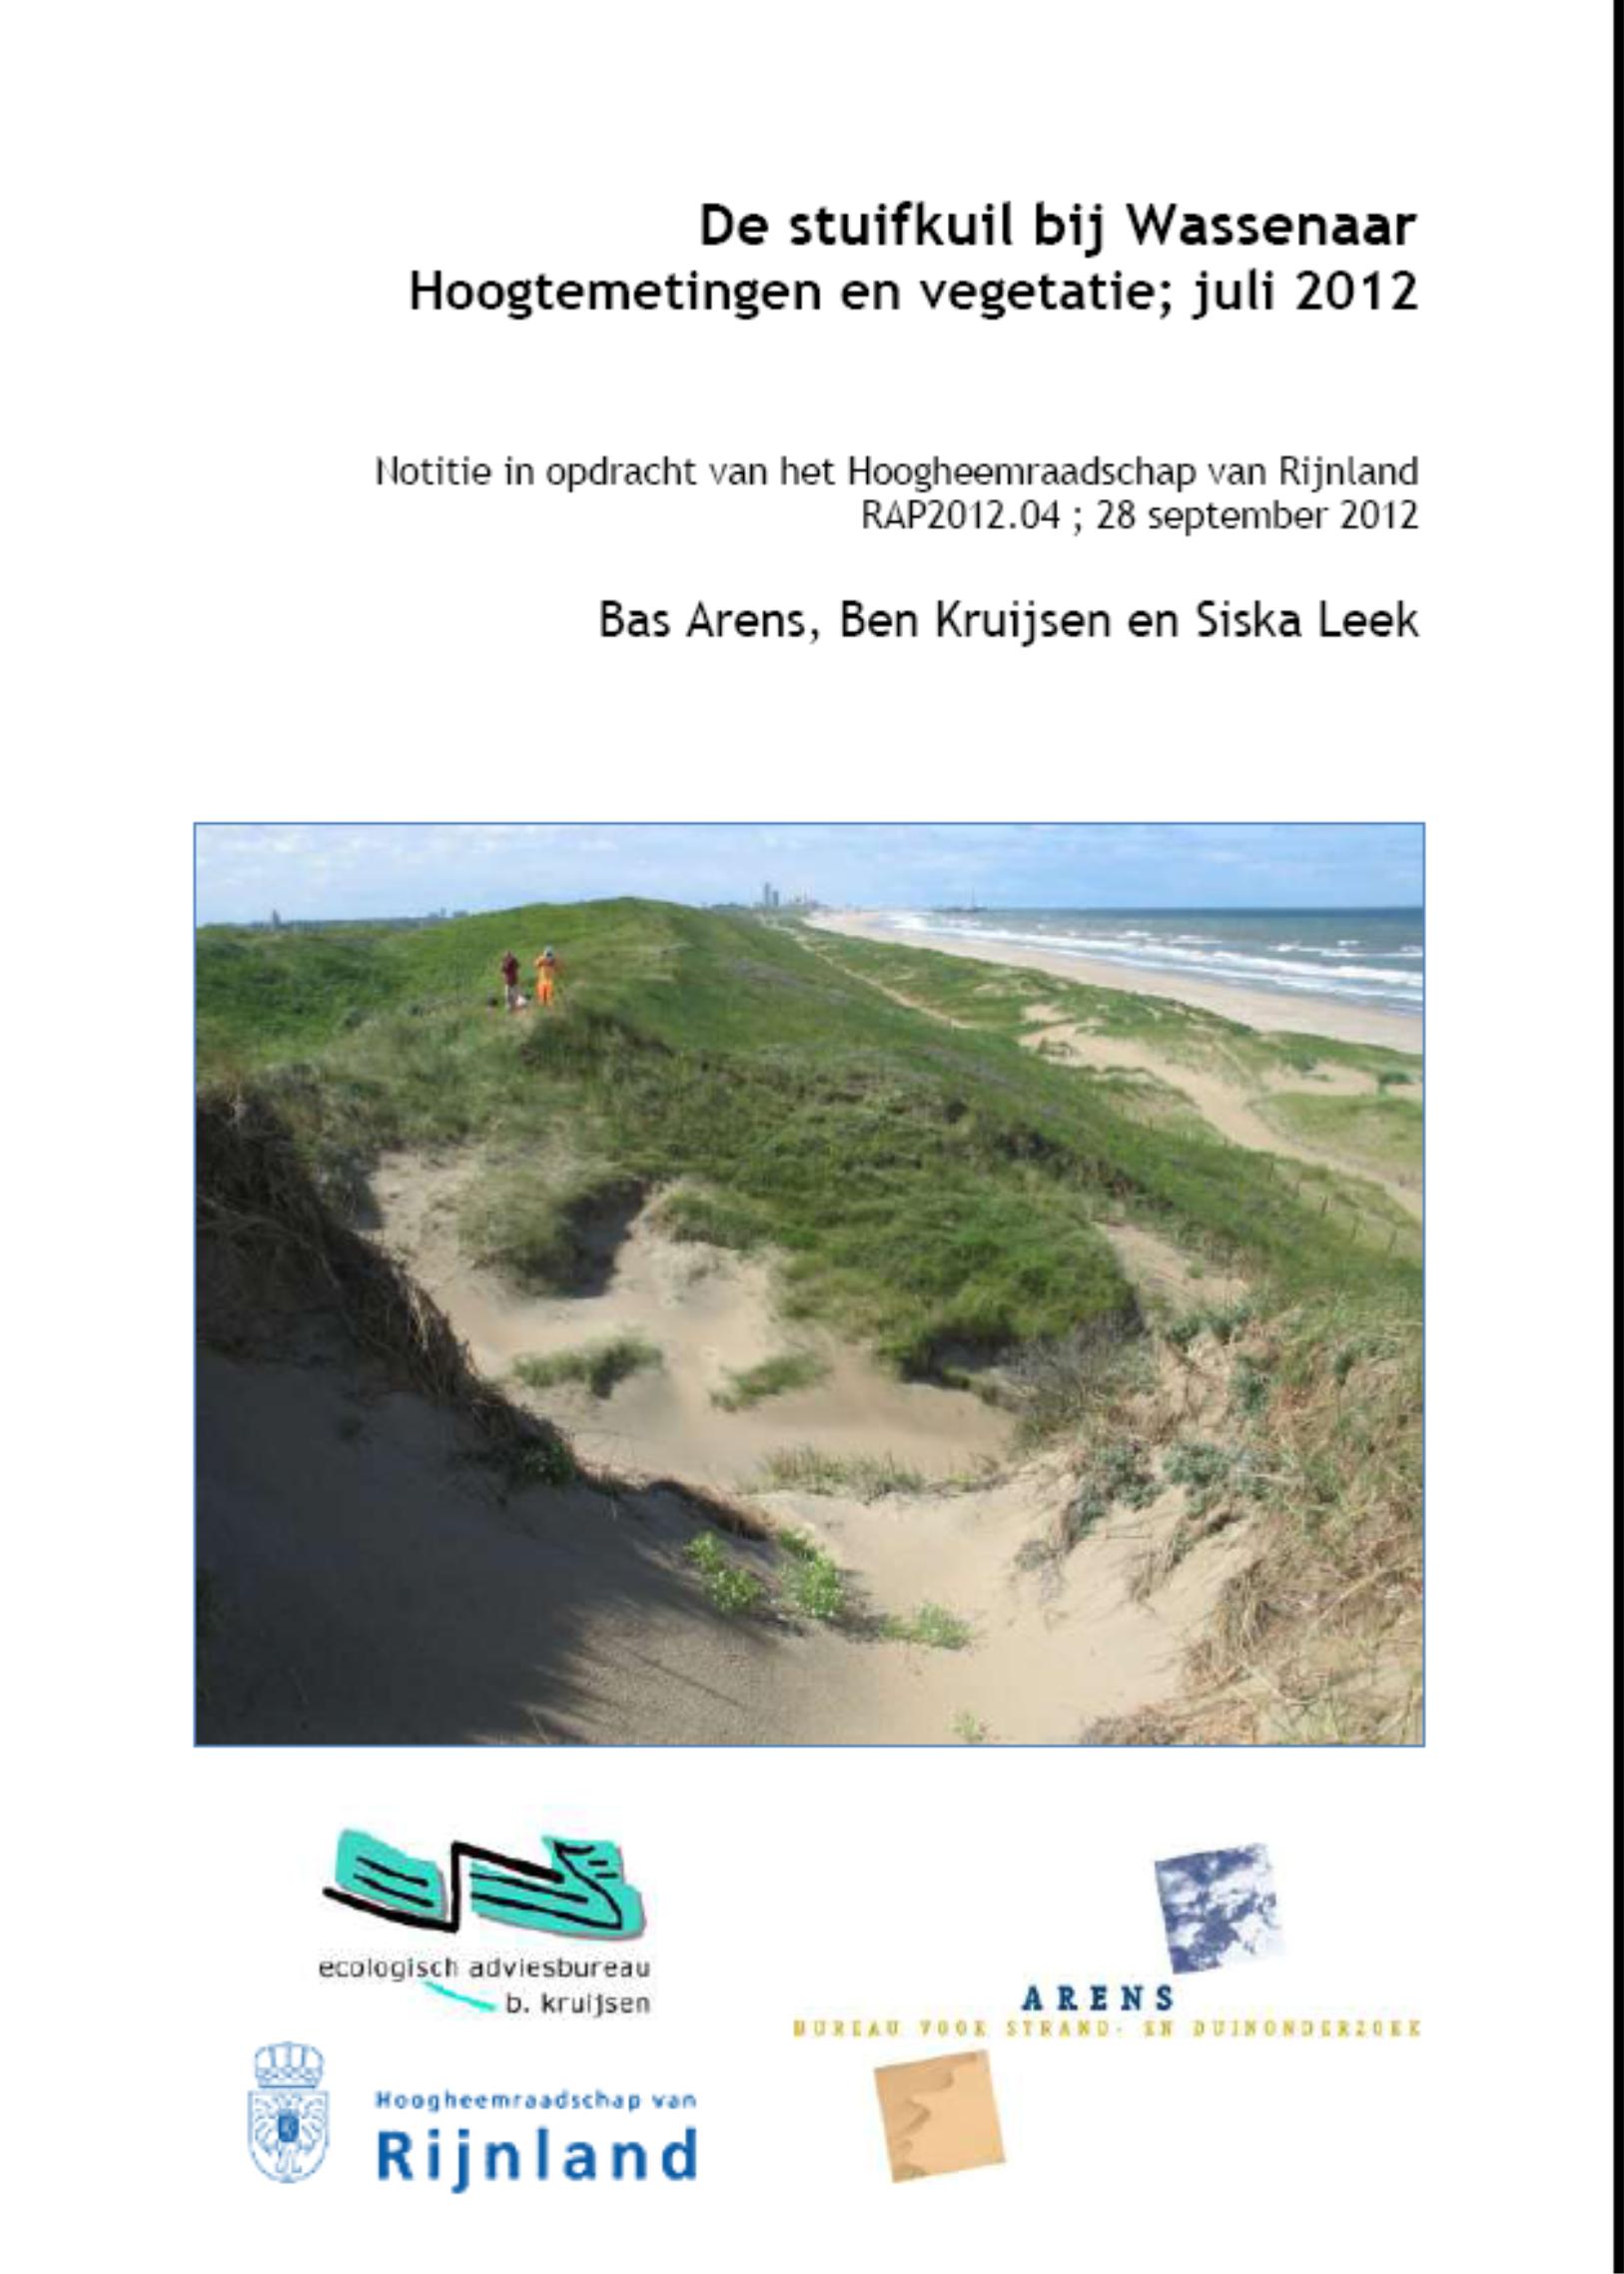 8a. De stuifkuil bij Wassenaar
Hoogtemetingen en vegetatie; juli 2012